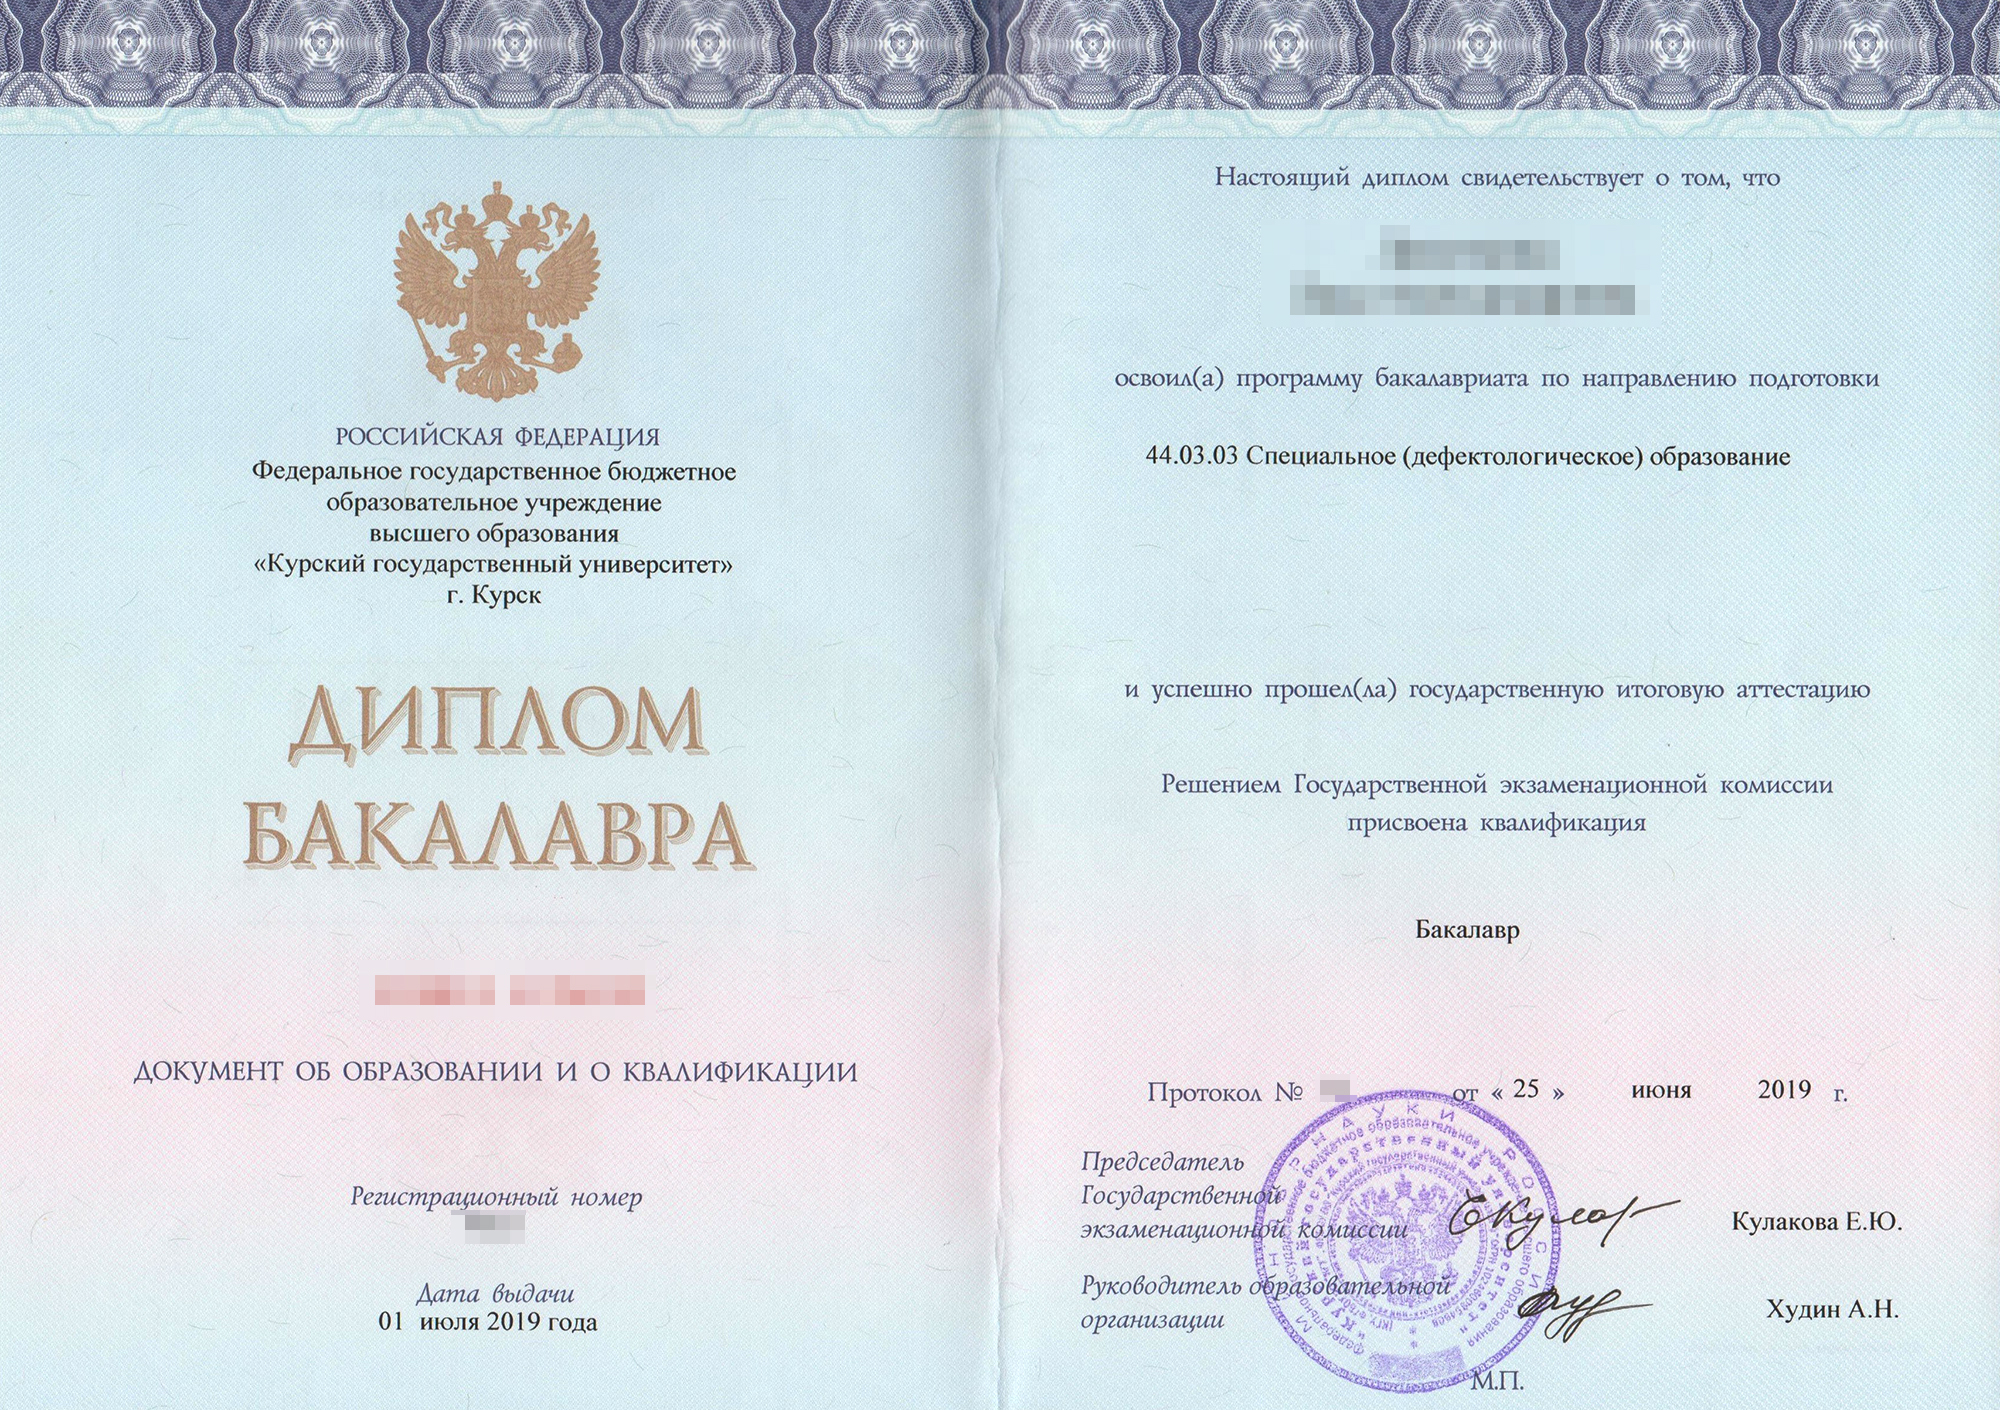 Такой диплом дает право устроиться на официальную работу по специальности педагога-дефектолога. Источник: rispomosh.ru